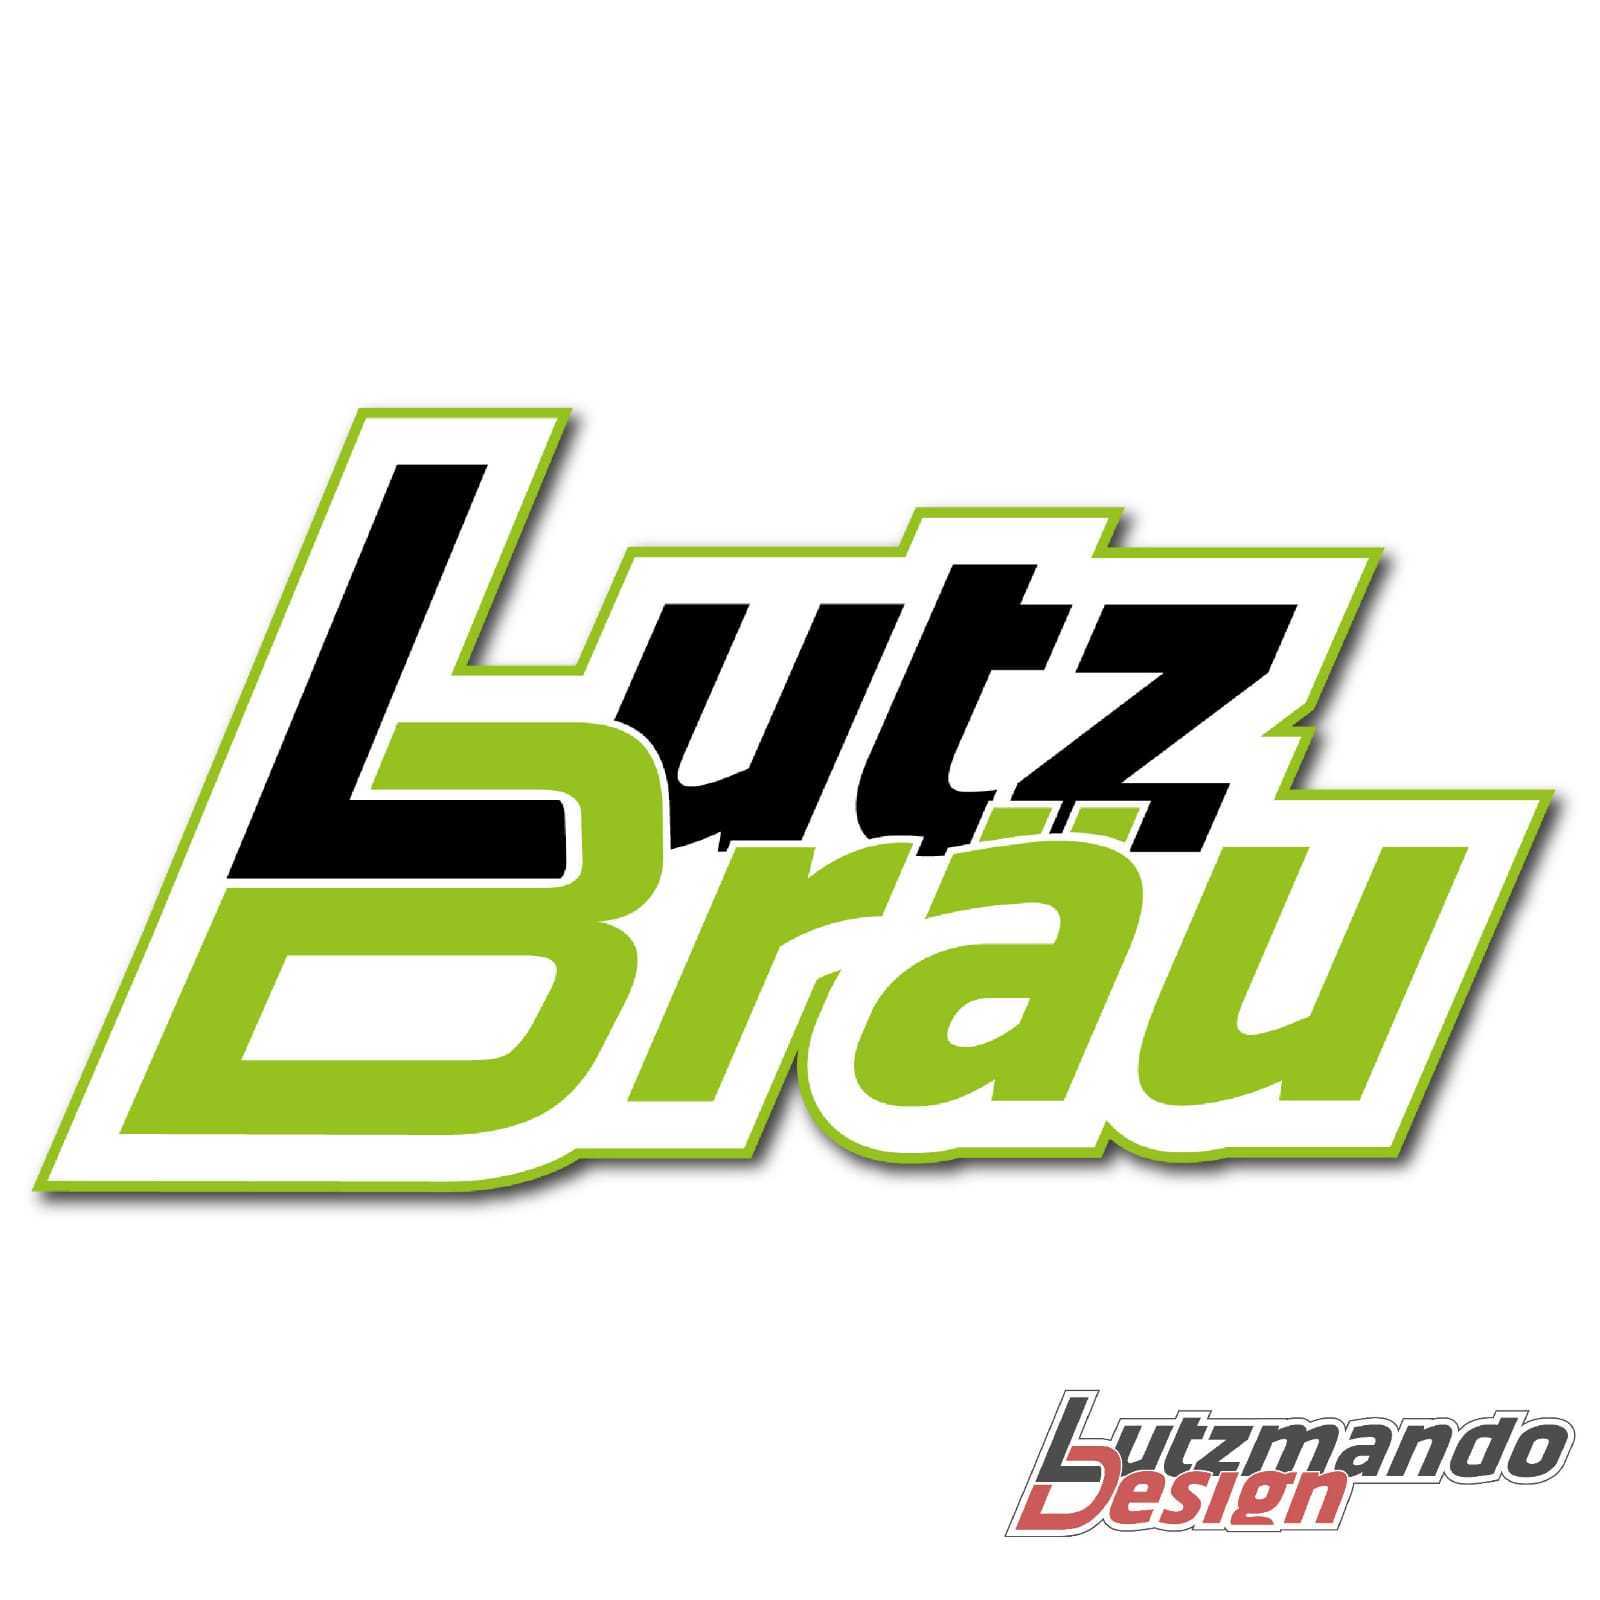 Lutz Brauerei